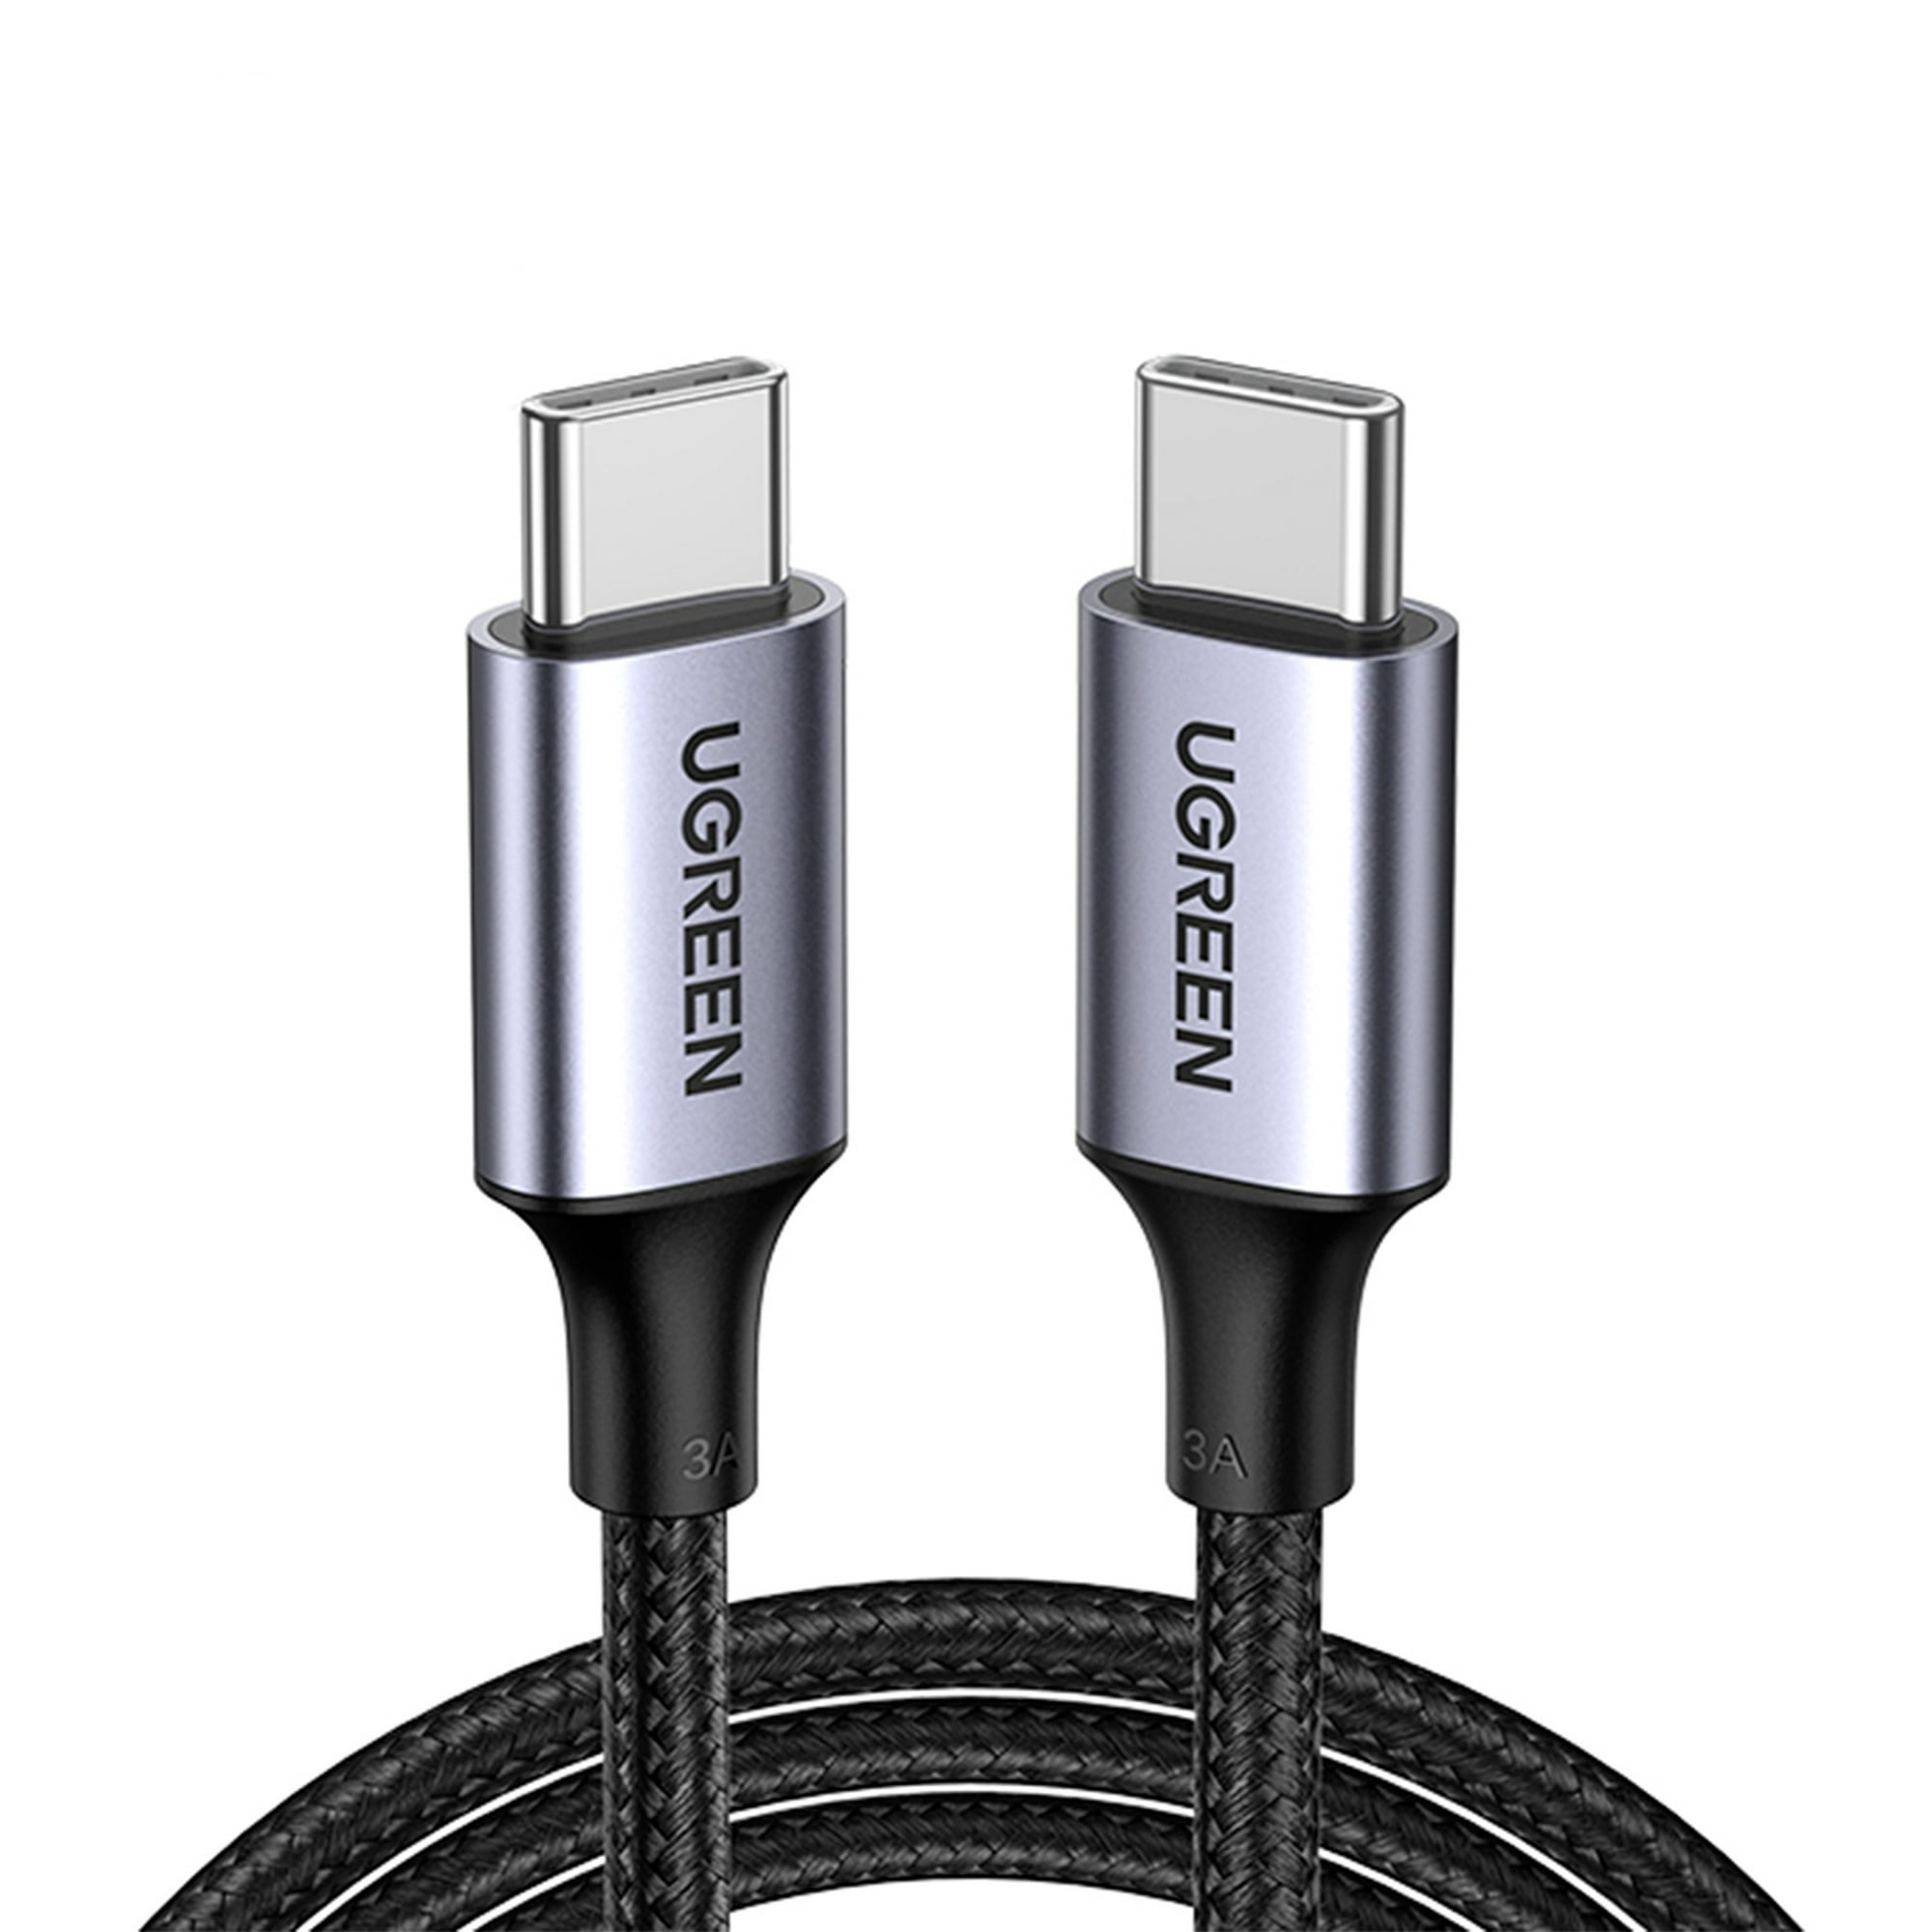 Cable USB-C a USB-A 3.0 Ugreen De 2 Mts Para Carga y Datos